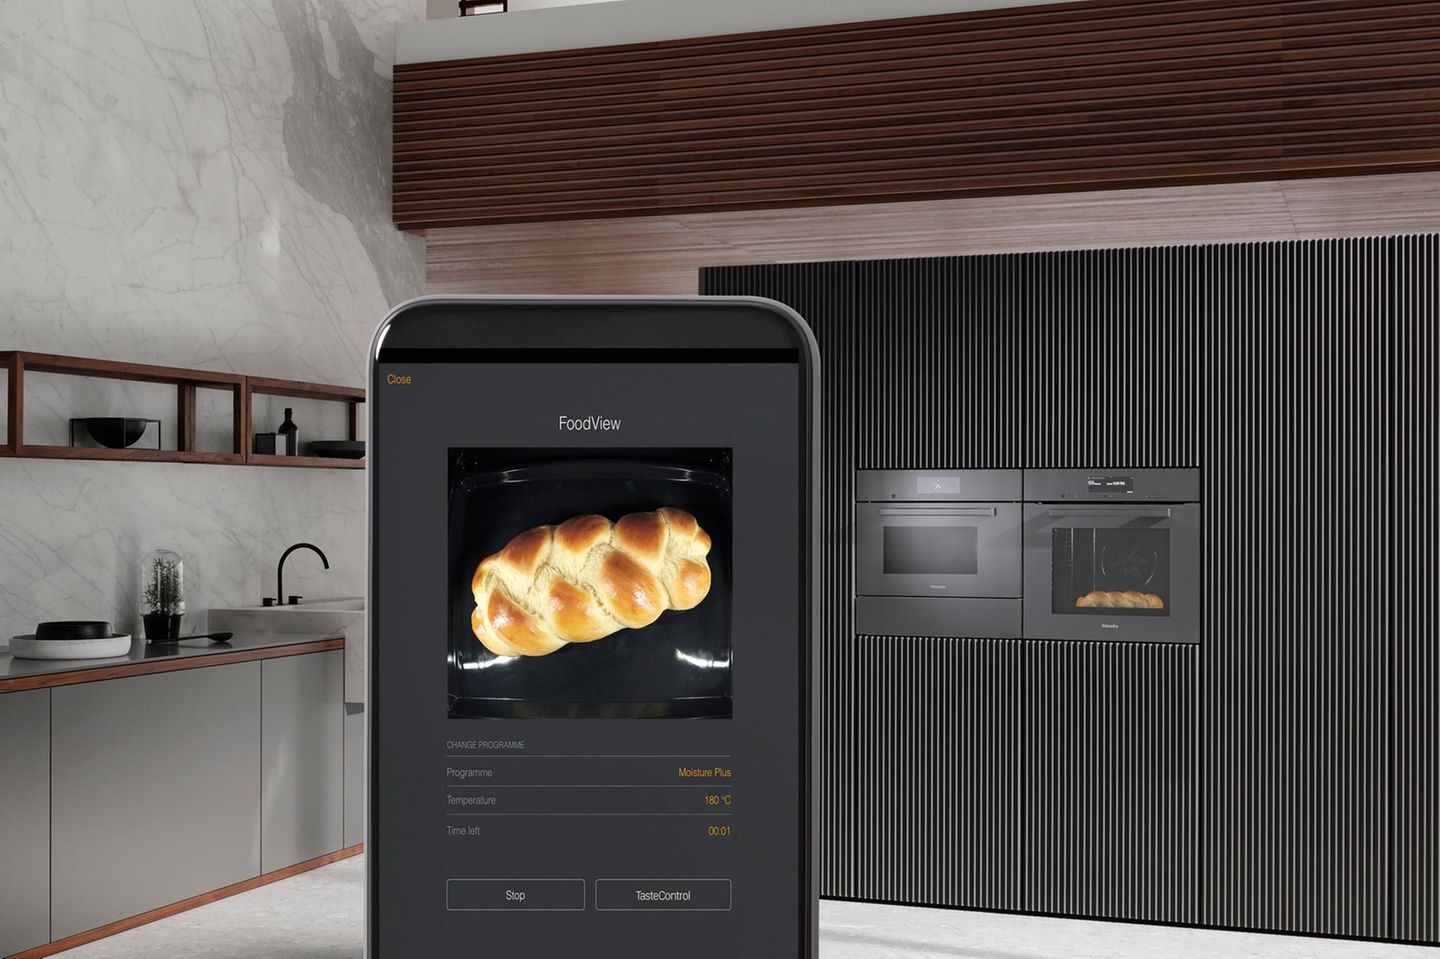 Handydisplay mit Hefezopf, im Hintergrund eine Küche mit Backofen in Grau- und Brauntönen